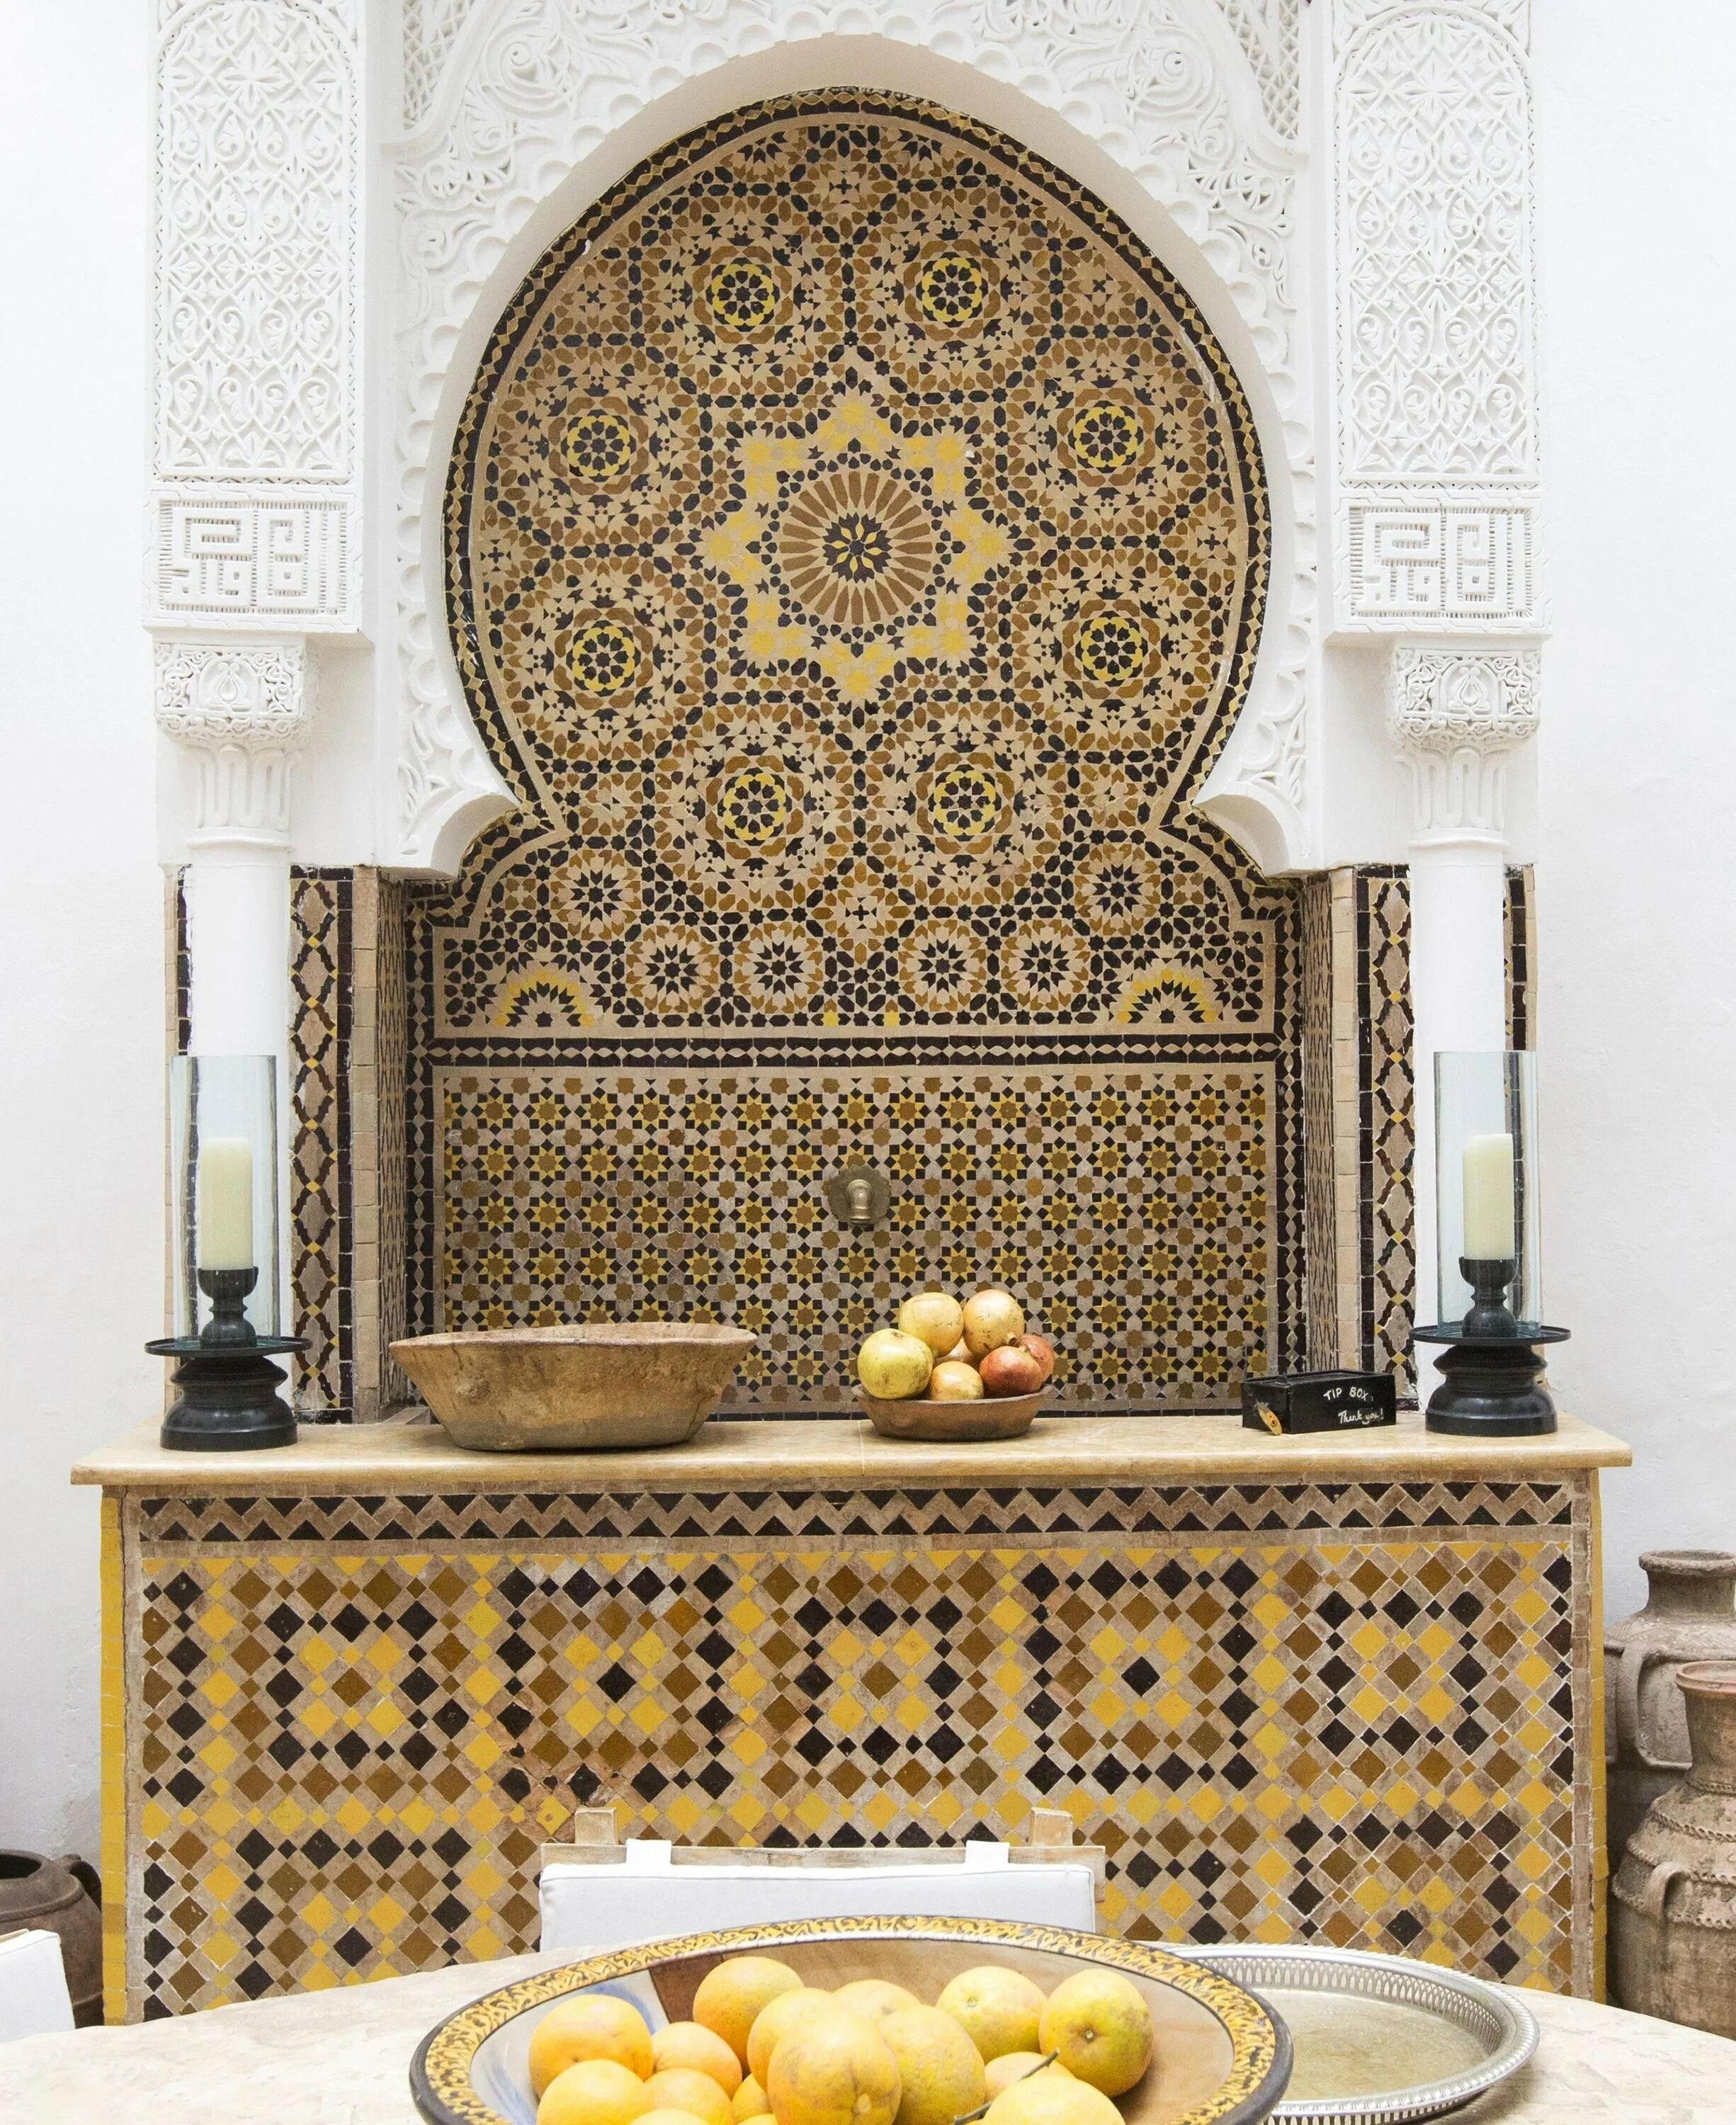 Марракеш Марокко орнамент. Марокканский стиль Марракеш. Мавританский стиль в Марокко. Интерьер в стиле Марракеш-Марокко.